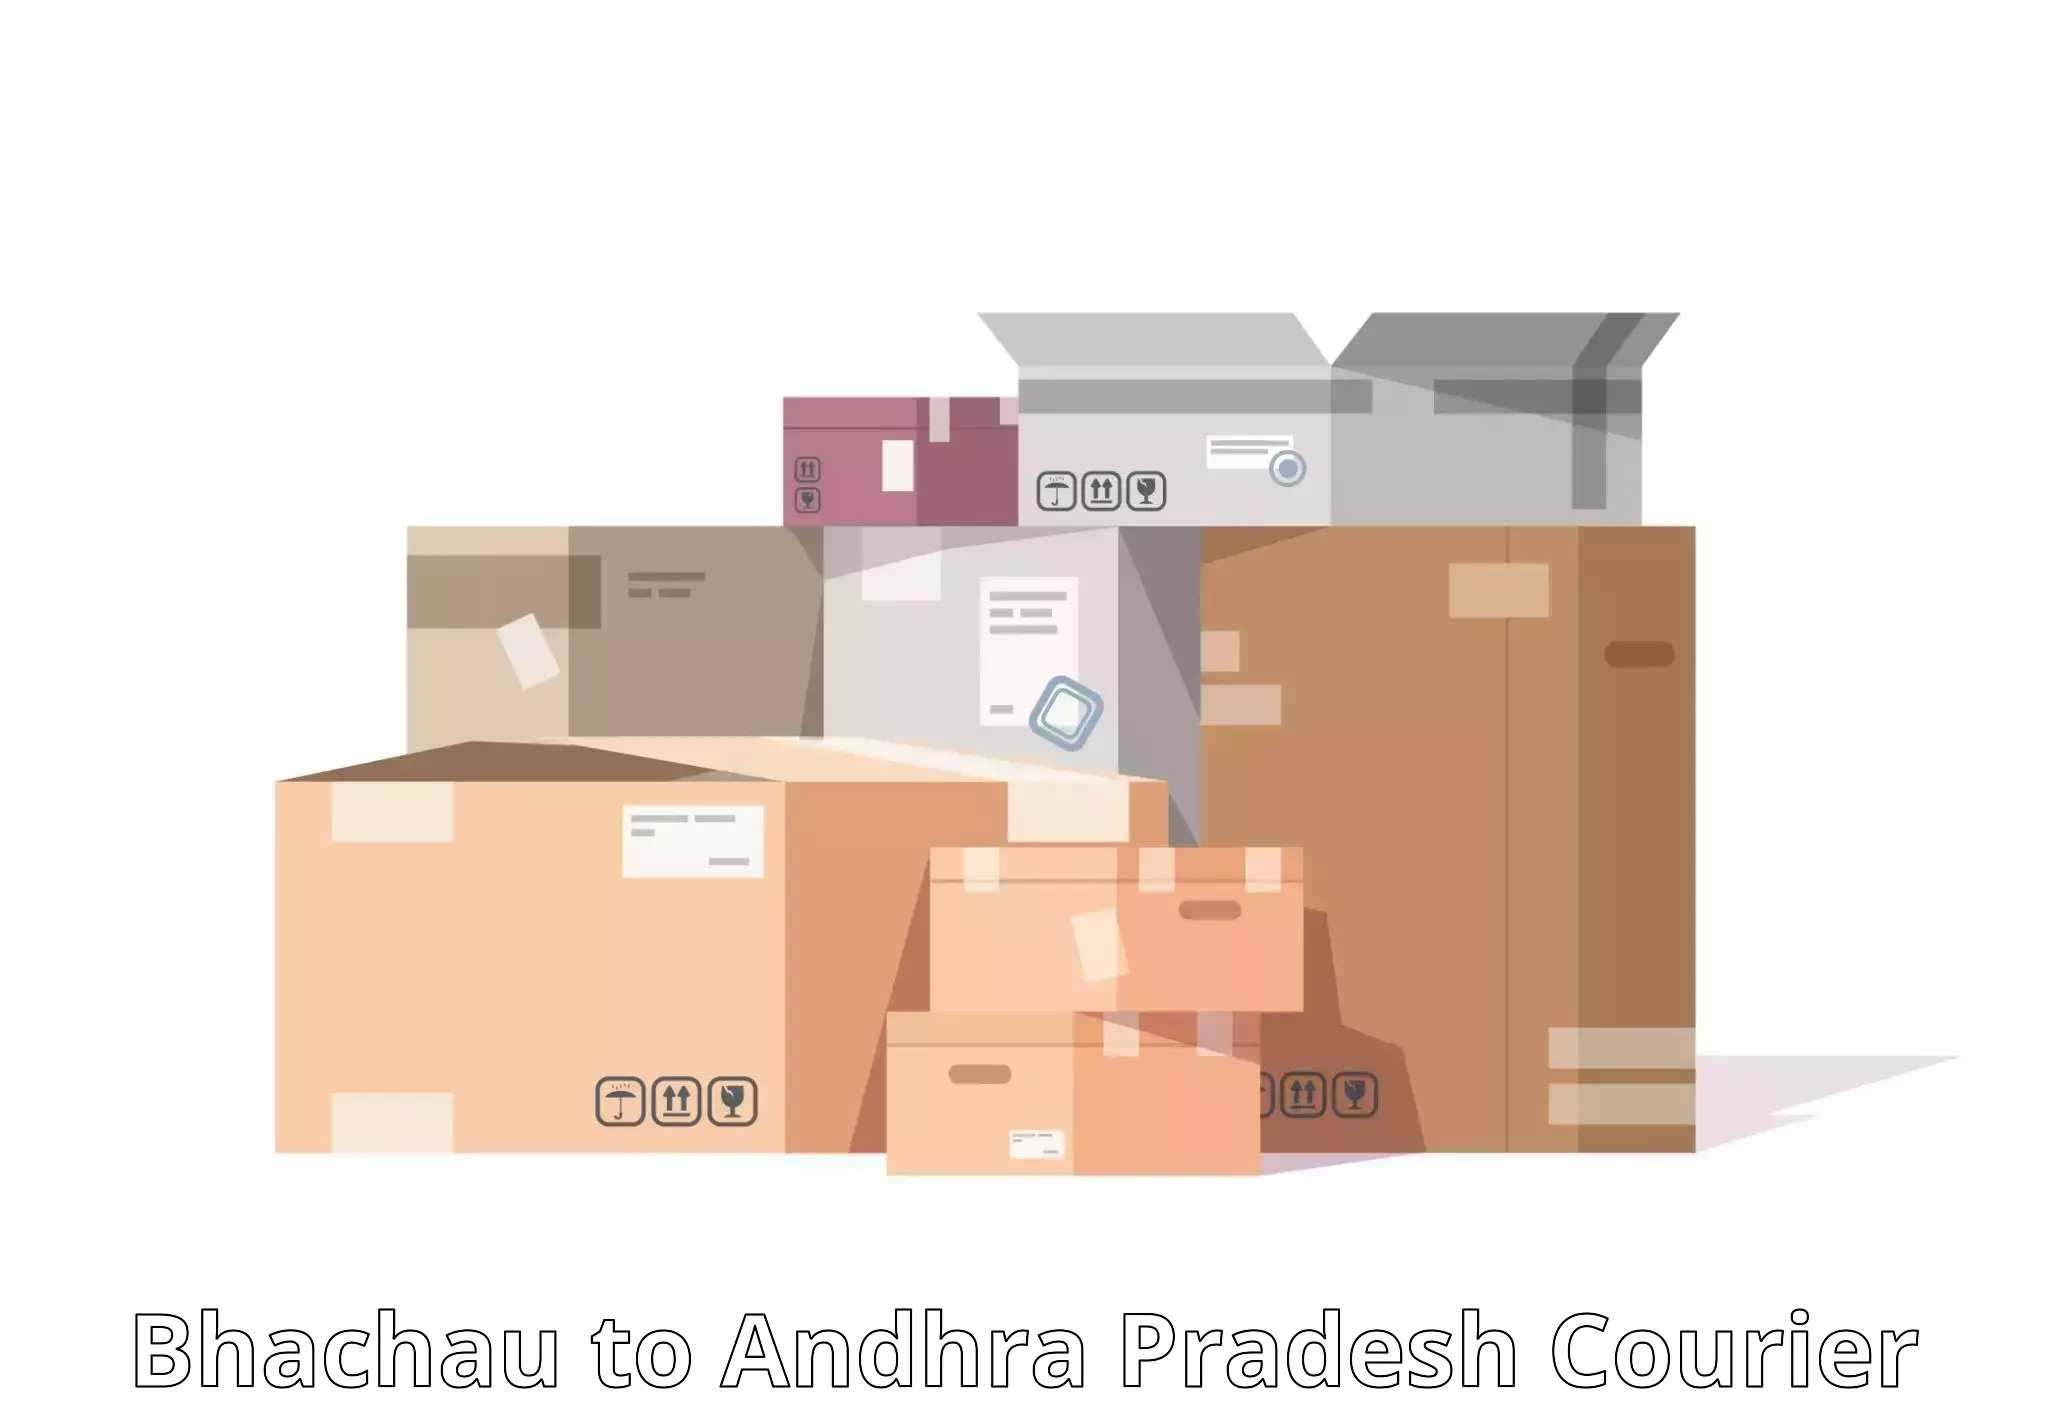 Comprehensive freight services Bhachau to Uravakonda